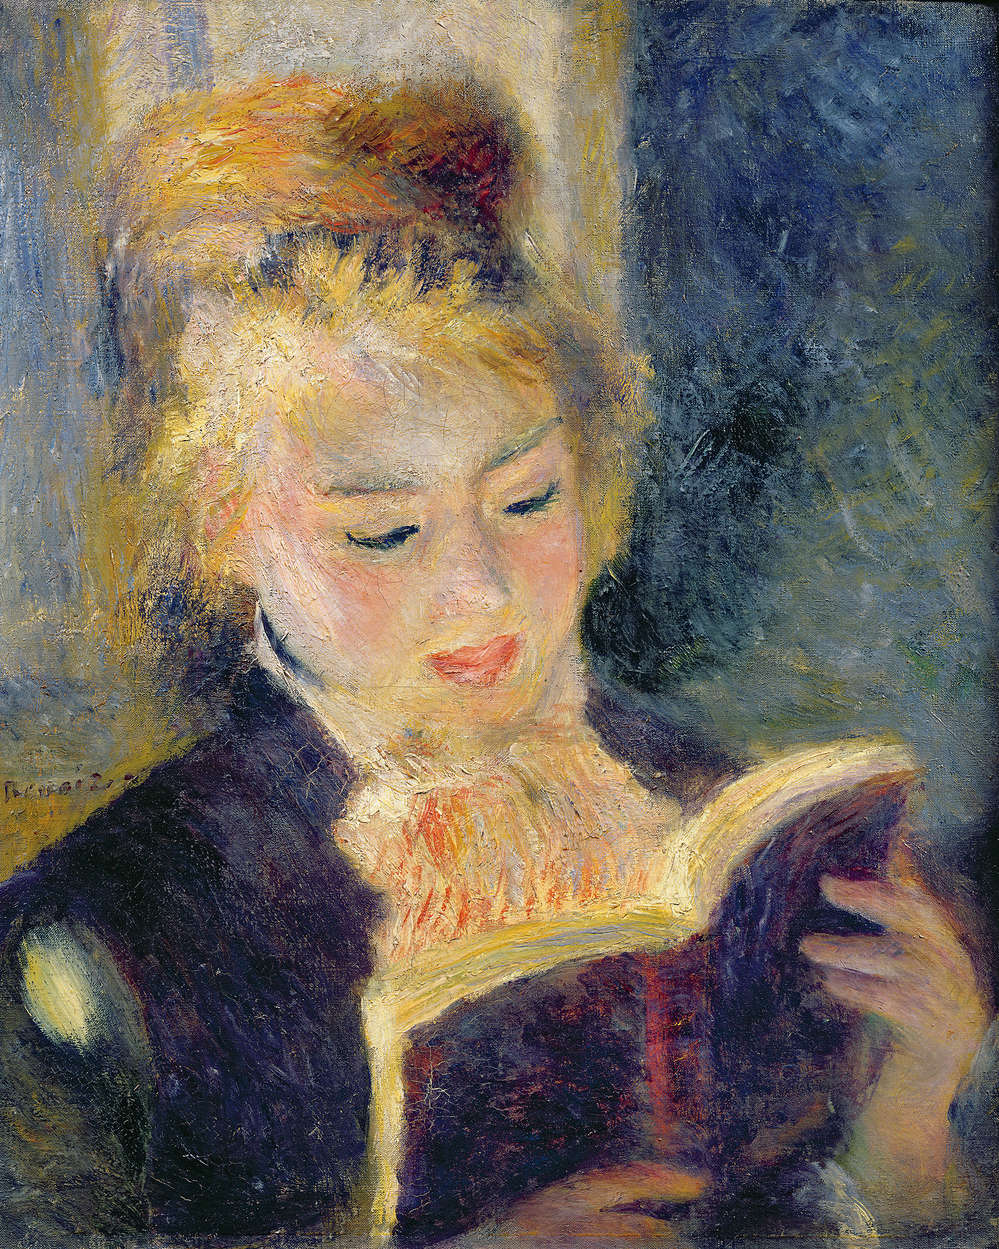             Reading Girl" muurschildering van Pierre Auguste Renoir
        